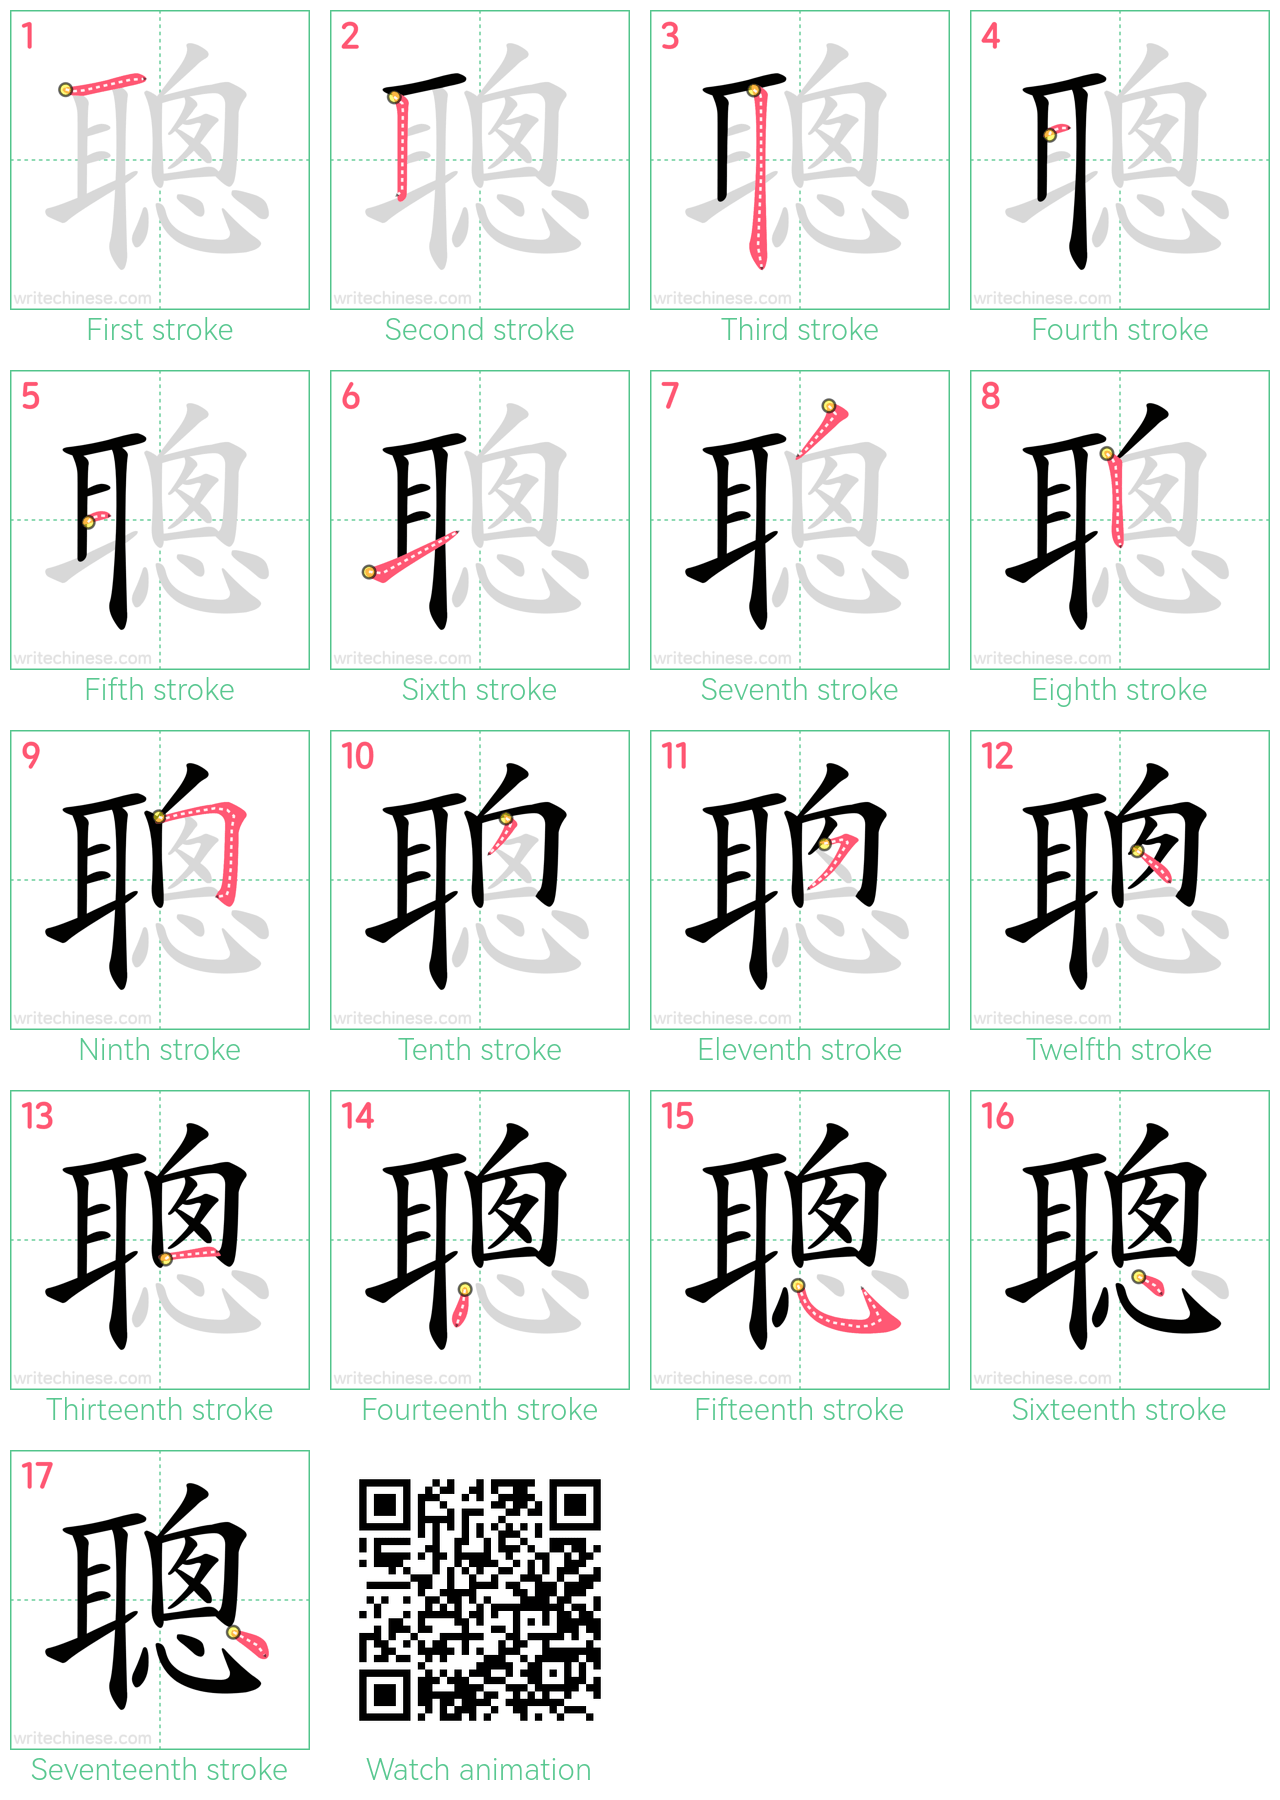 聰 step-by-step stroke order diagrams